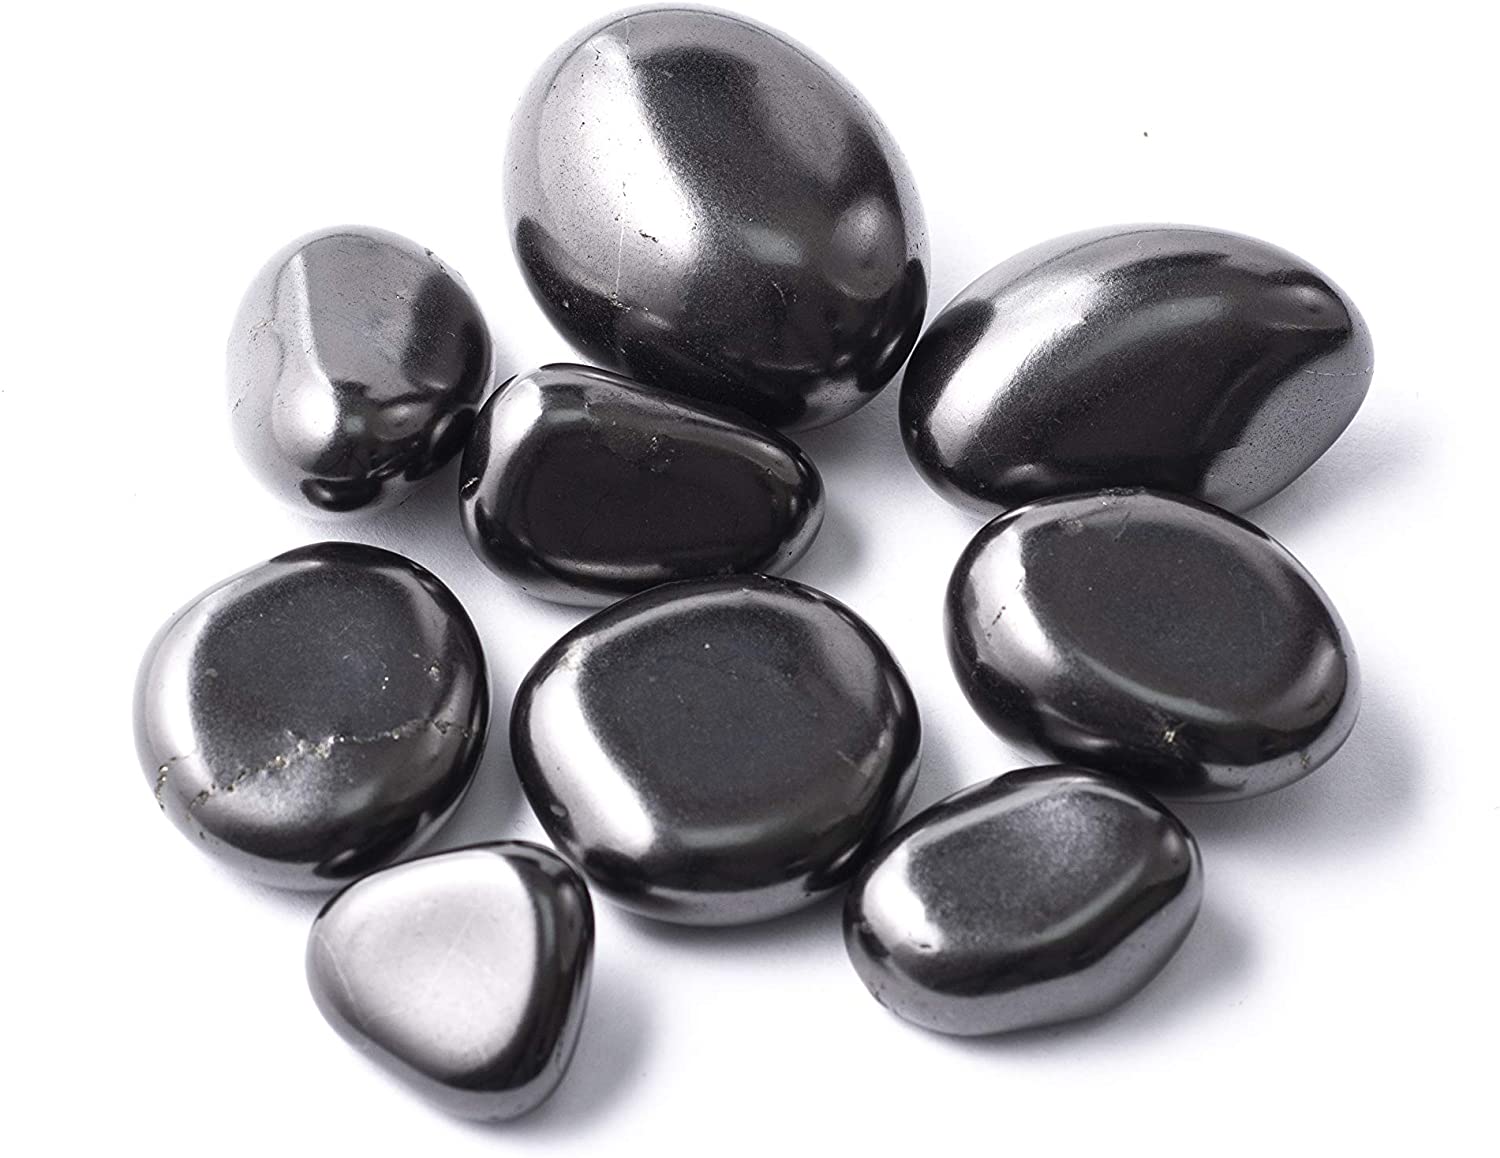 Shungite Tumble Stone (20-25mm) - 5 Pack